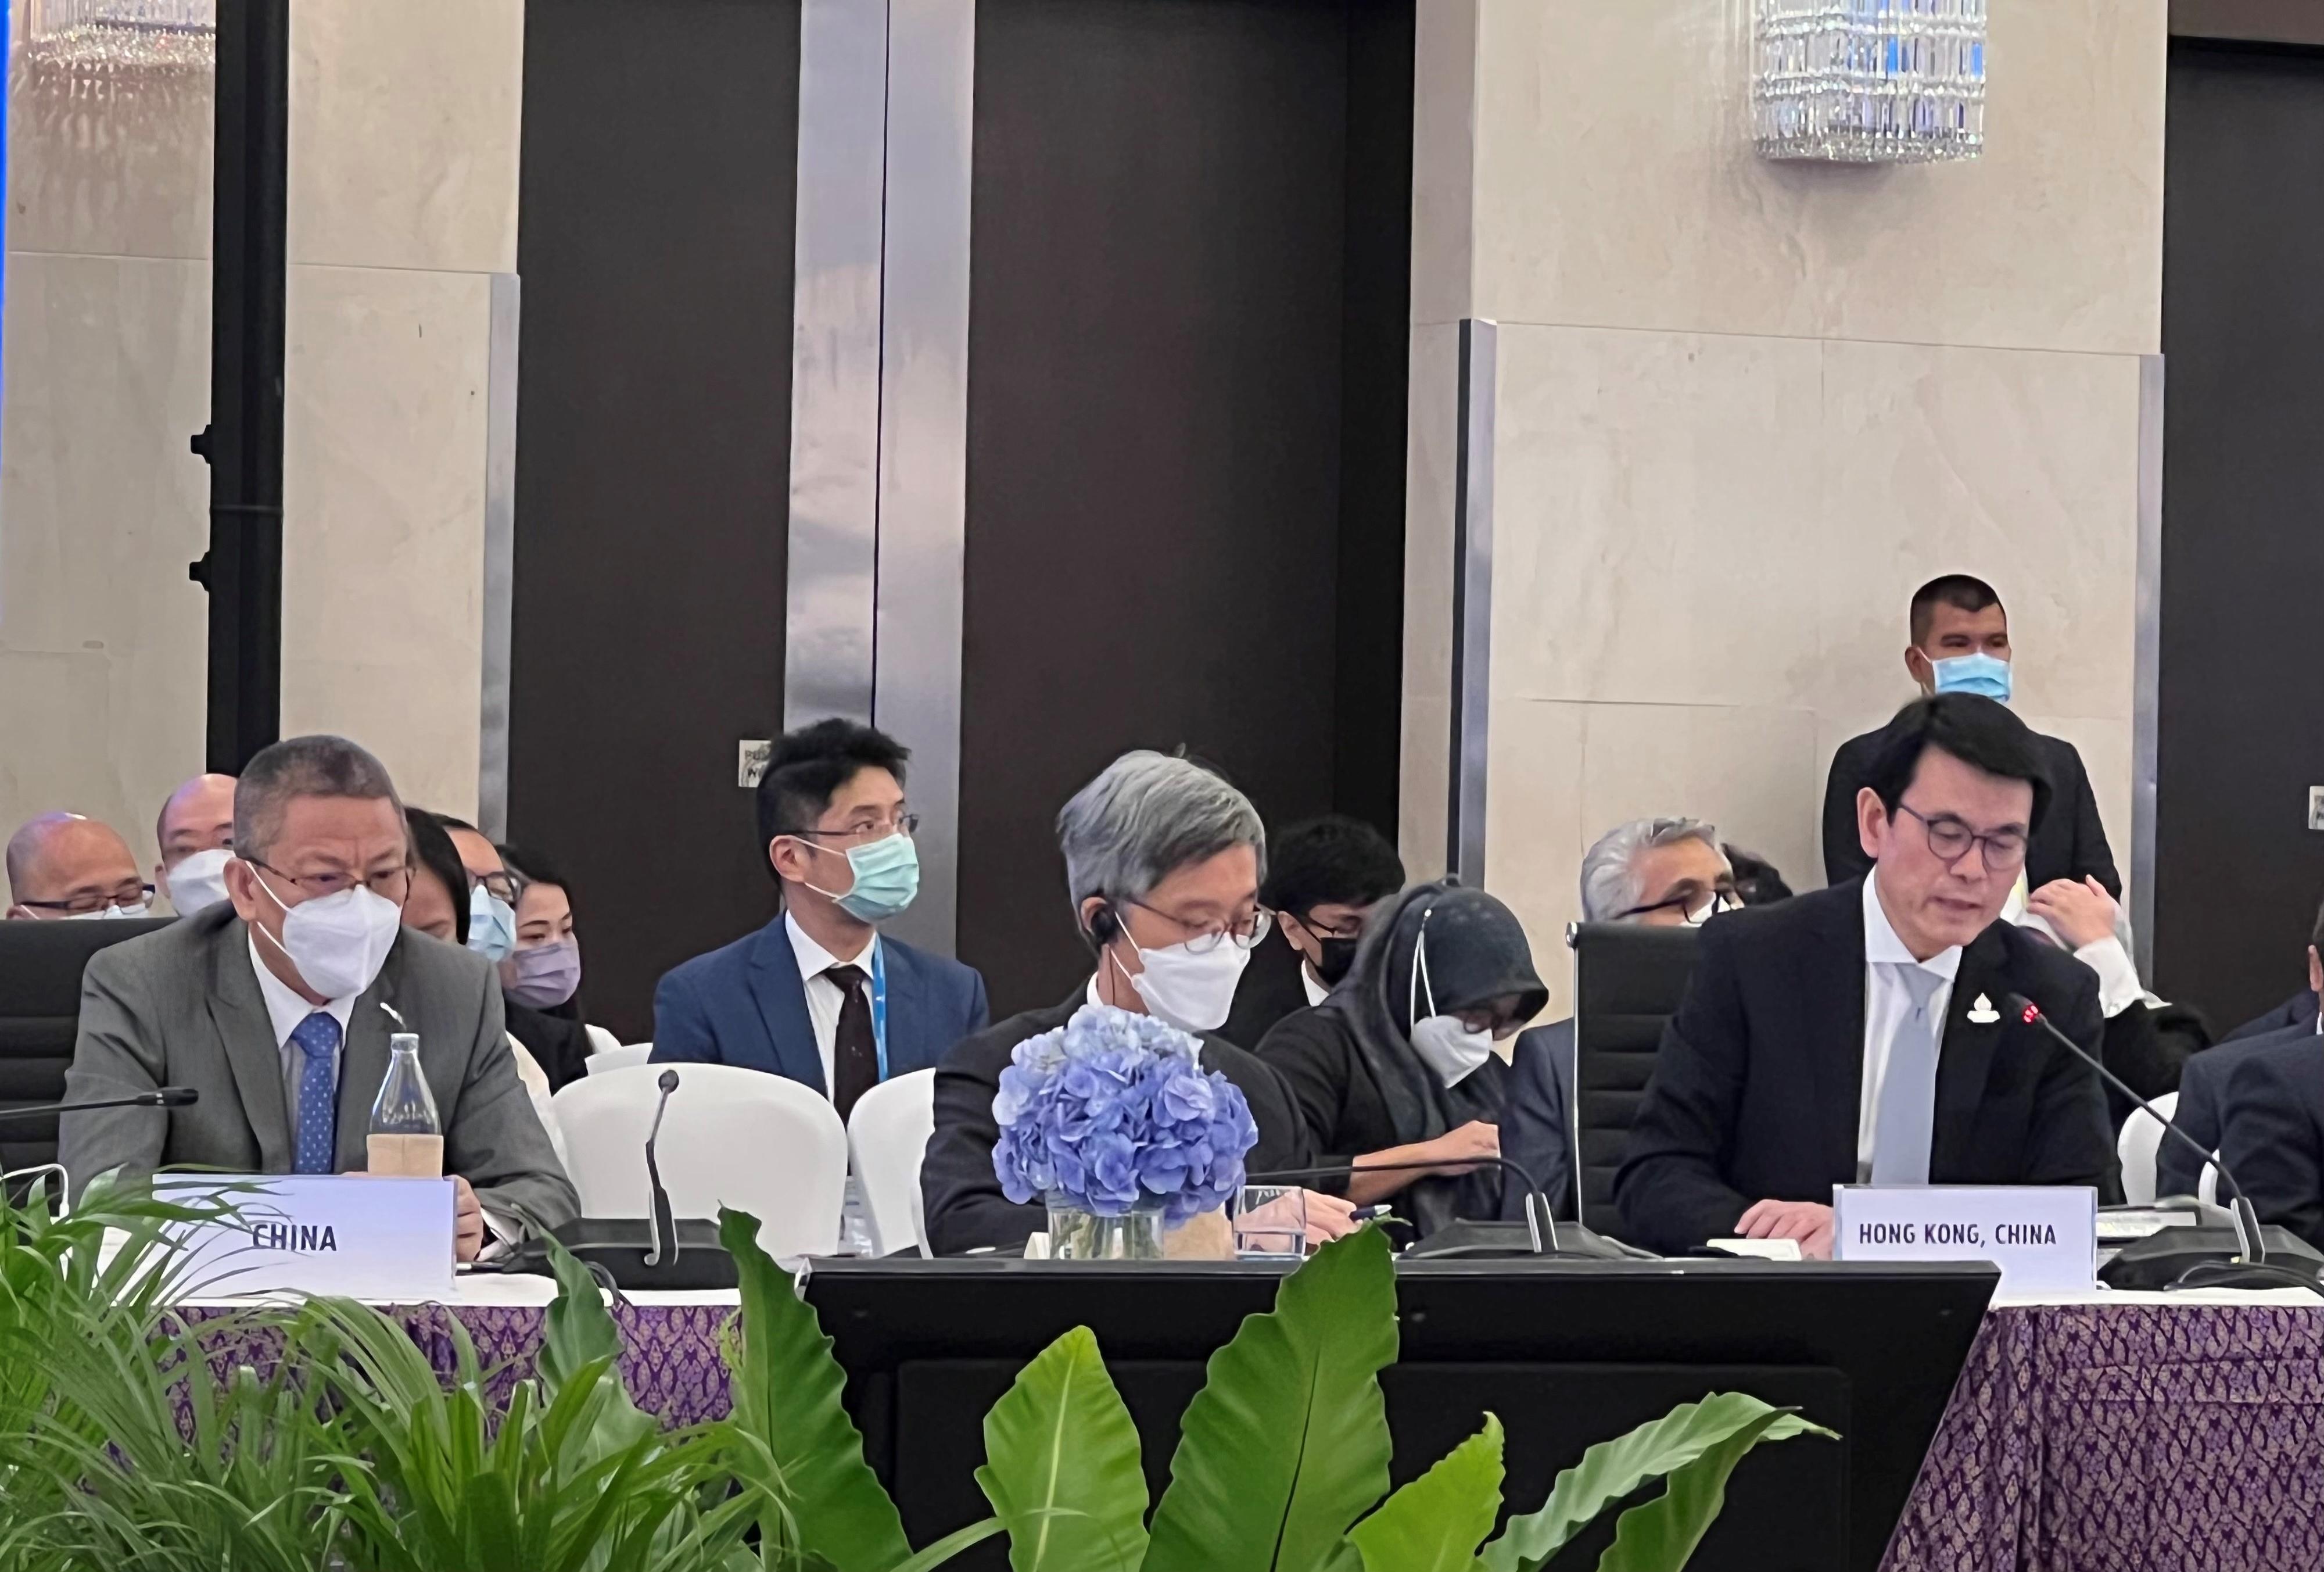 商務及經濟發展局局長邱騰華（右一）今日（五月二十一日）出席在泰國曼谷舉行的亞太區經濟合作組織貿易部長會議，在主題為「支持多邊貿易制度」的討論環節發言。